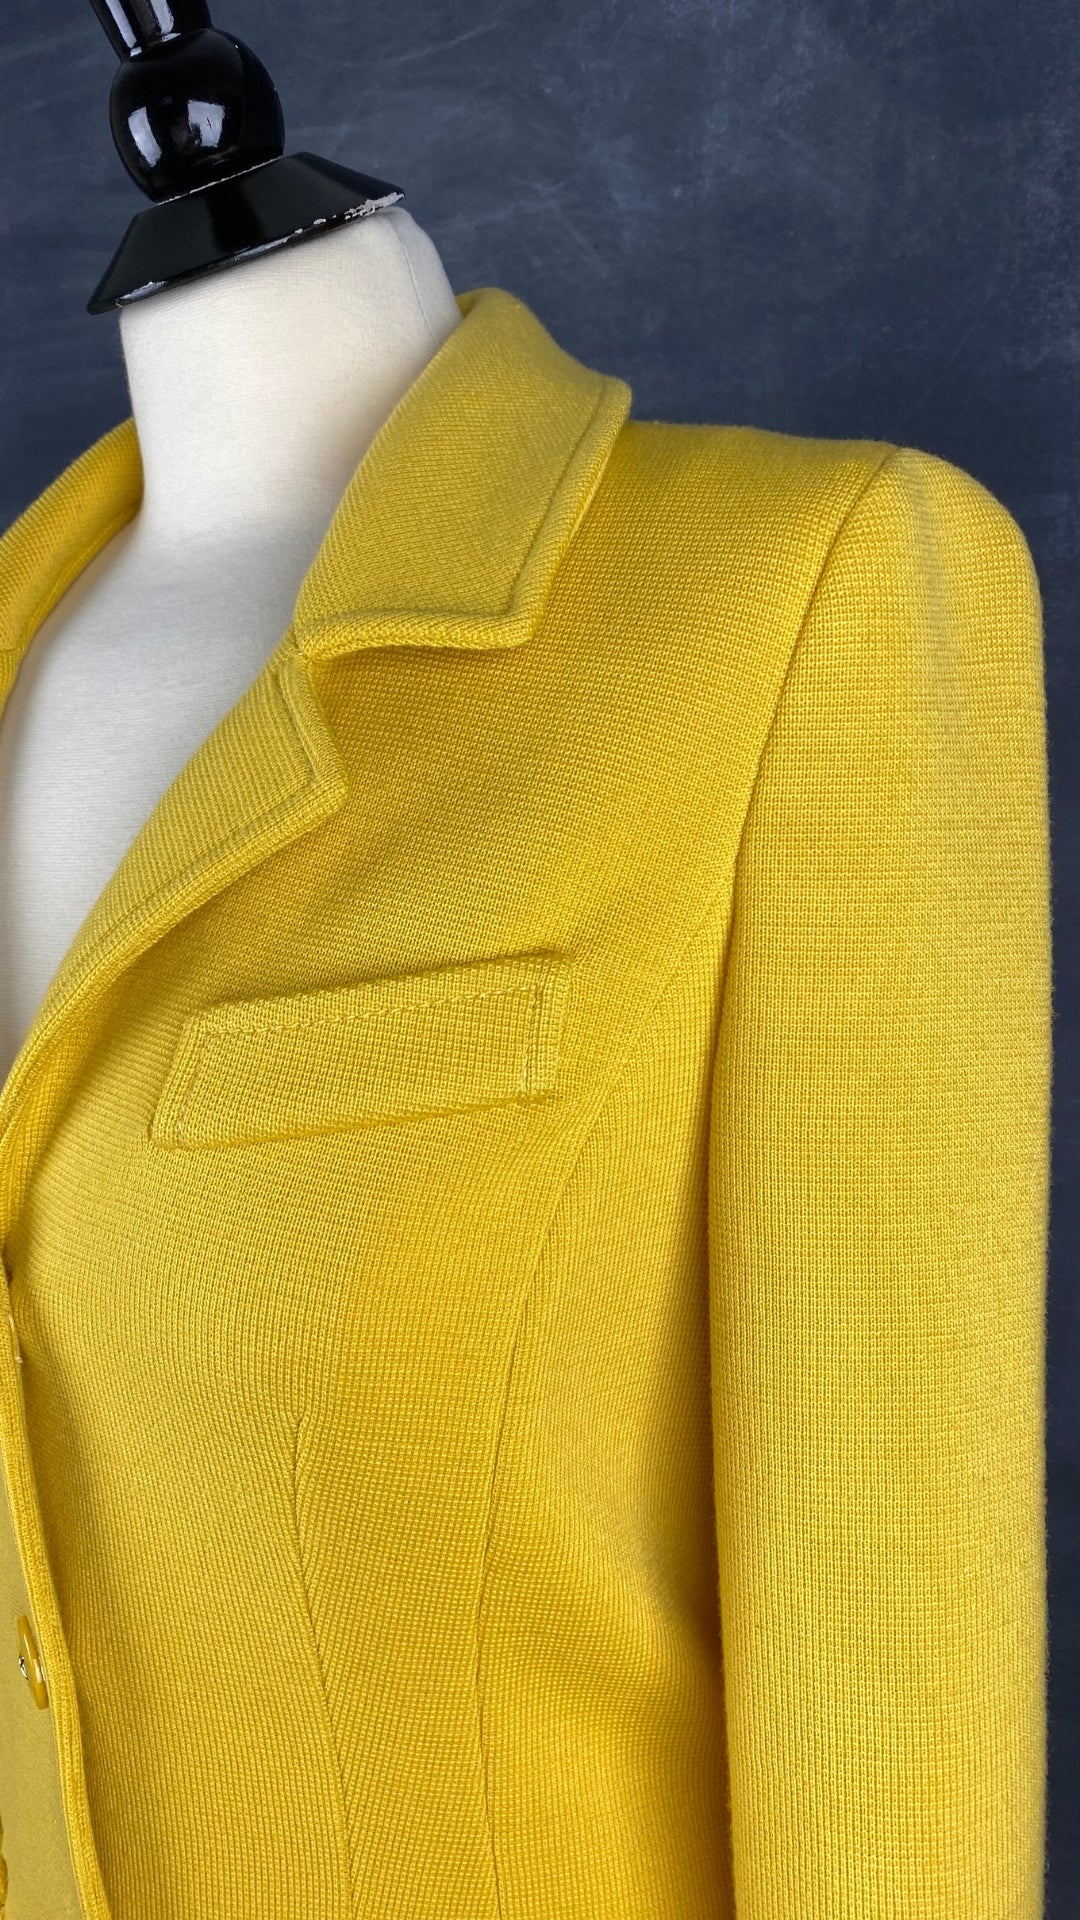 Veste style blazer jaune doré en laine Luisa Spagnoli, taille small. Vue de l'encolure.